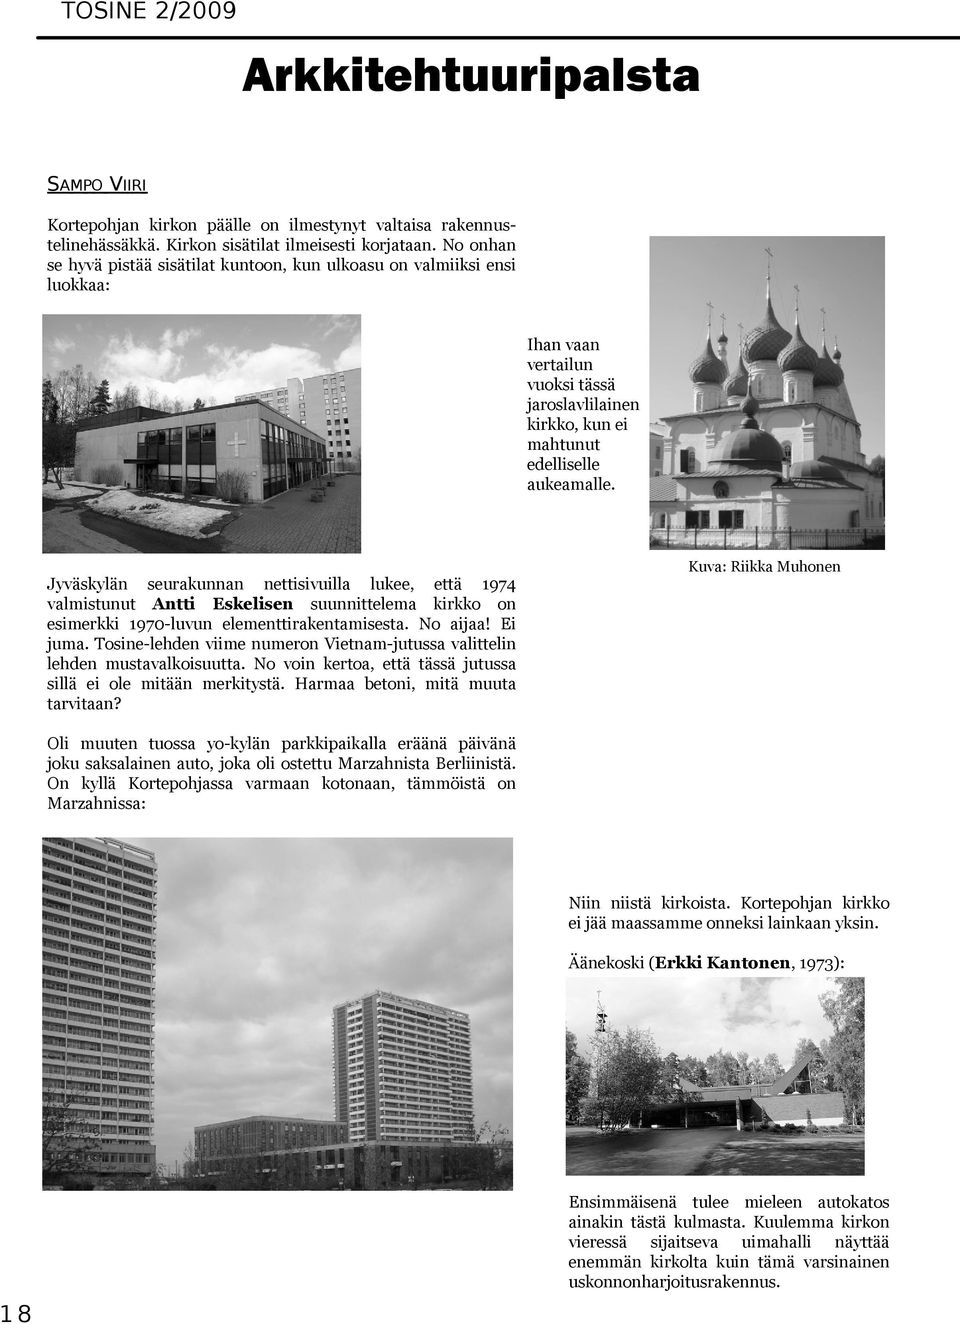 Jyväskylän seurakunnan nettisivuilla lukee, että 1974 valmistunut Antti Eskelisen suunnittelema kirkko on esimerkki 1970-luvun elementtirakentamisesta. No aijaa! Ei juma.